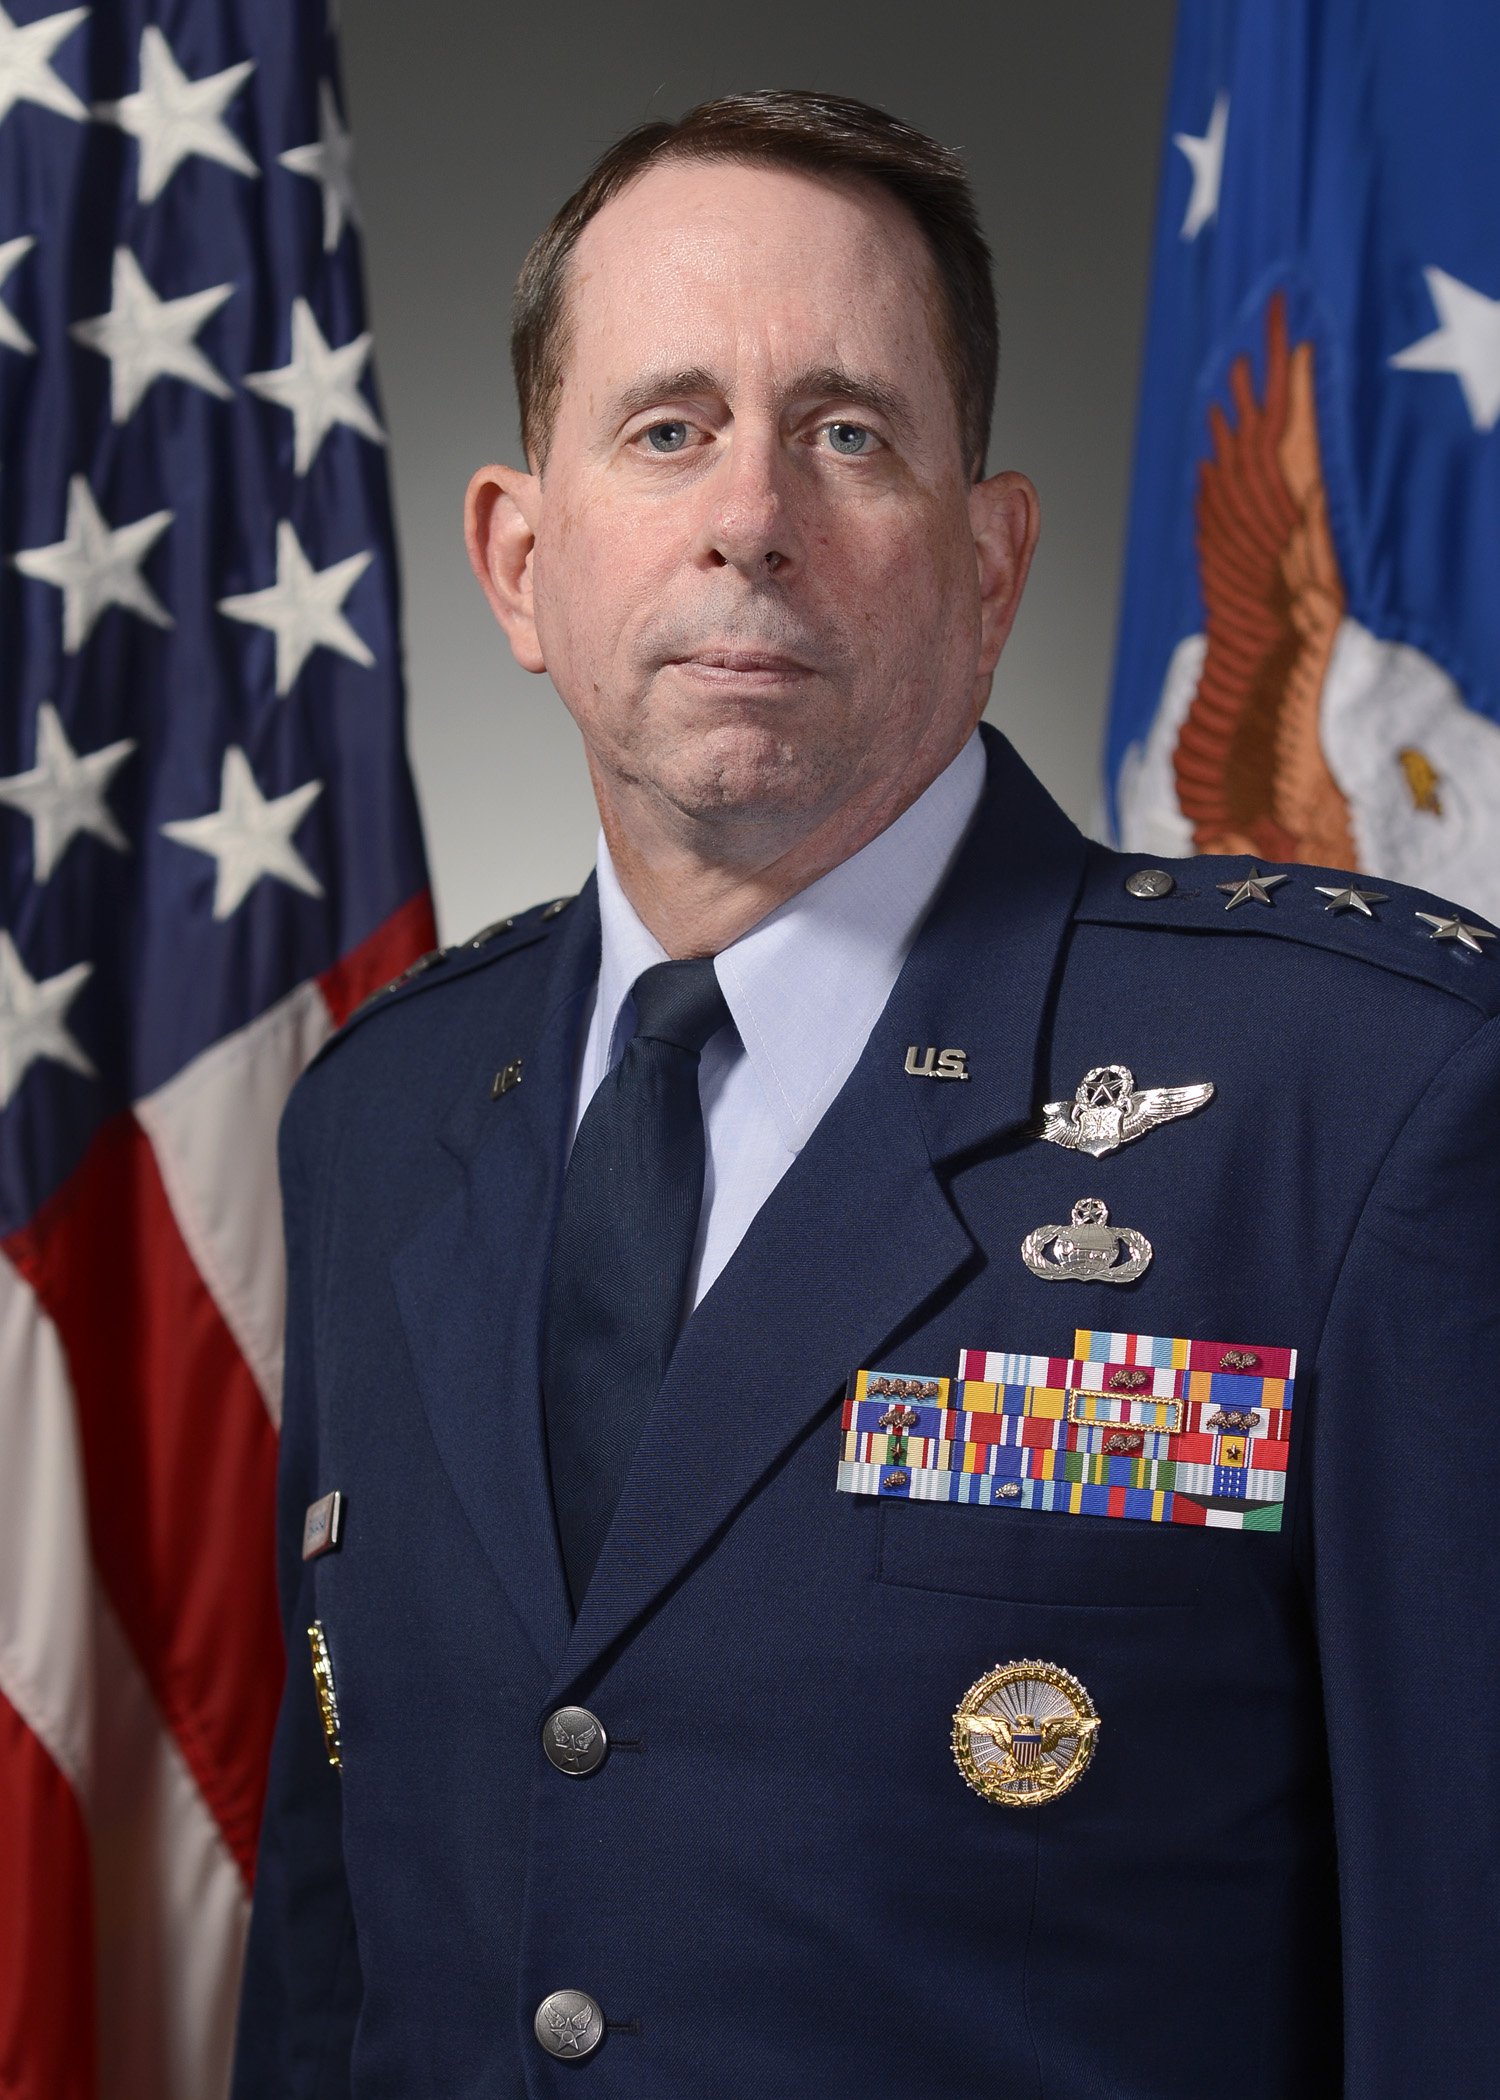 Lt Gen John N.T. Shanahan, USAF